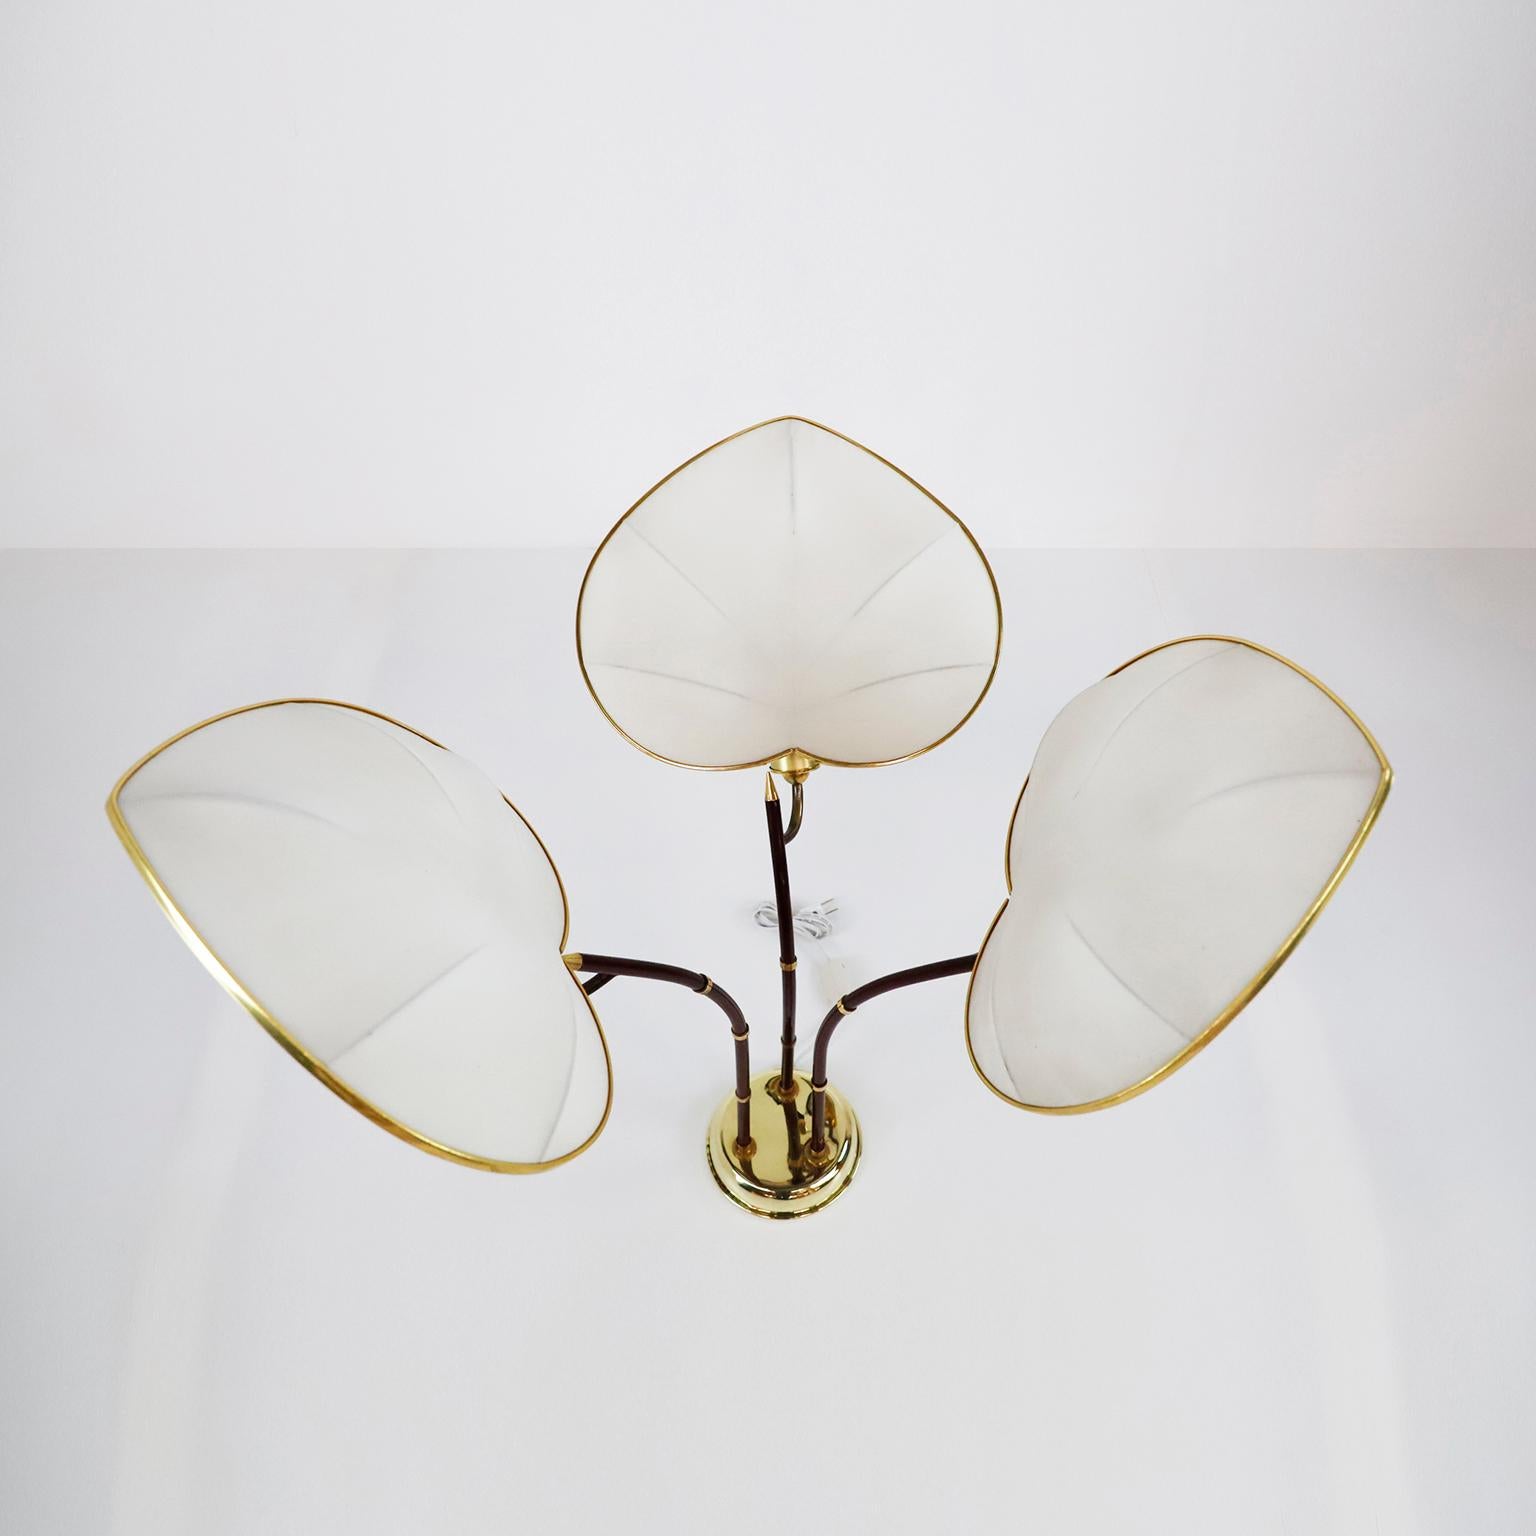 Circa 1960, Nous vous proposons cette lampe à poser en forme de palmier conçue par Arturo Pani. Cette lampe est peut-être l'une des plus fantaisistes de tous les merveilleux designs d'Arturo Pani. Fabriqué en laiton et en métal tubulaire laqué dans